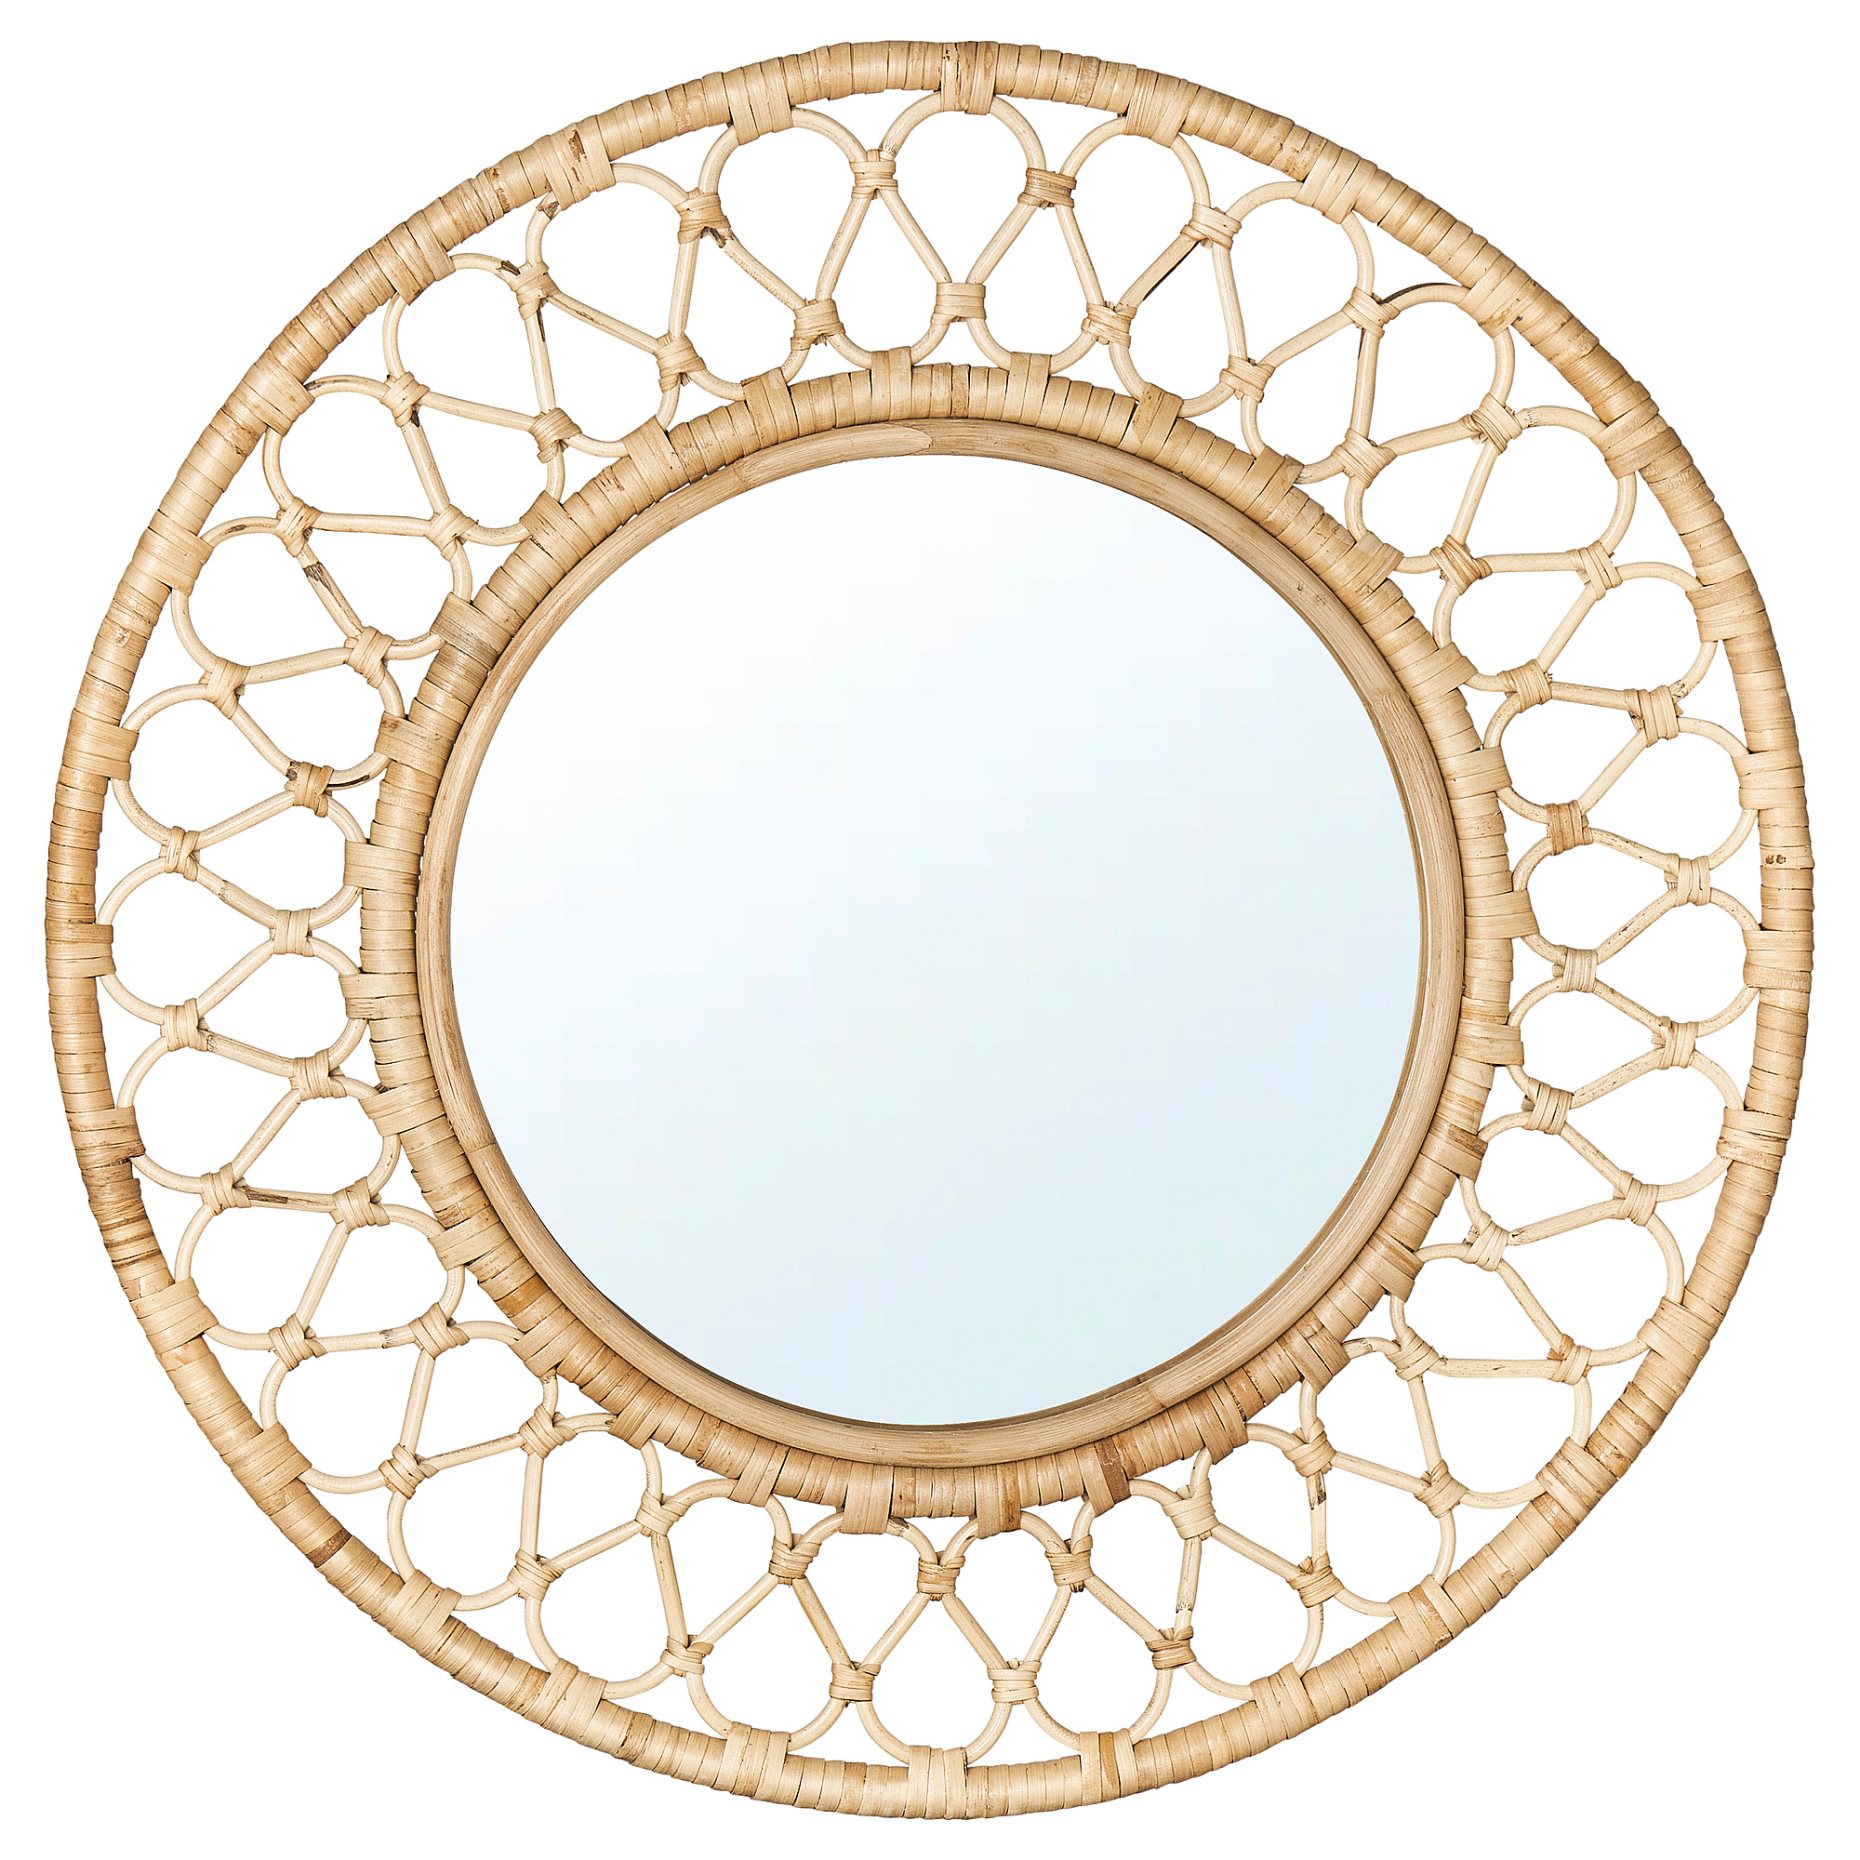 GRINSBOL, mirror, 55 cm, 305.184.64